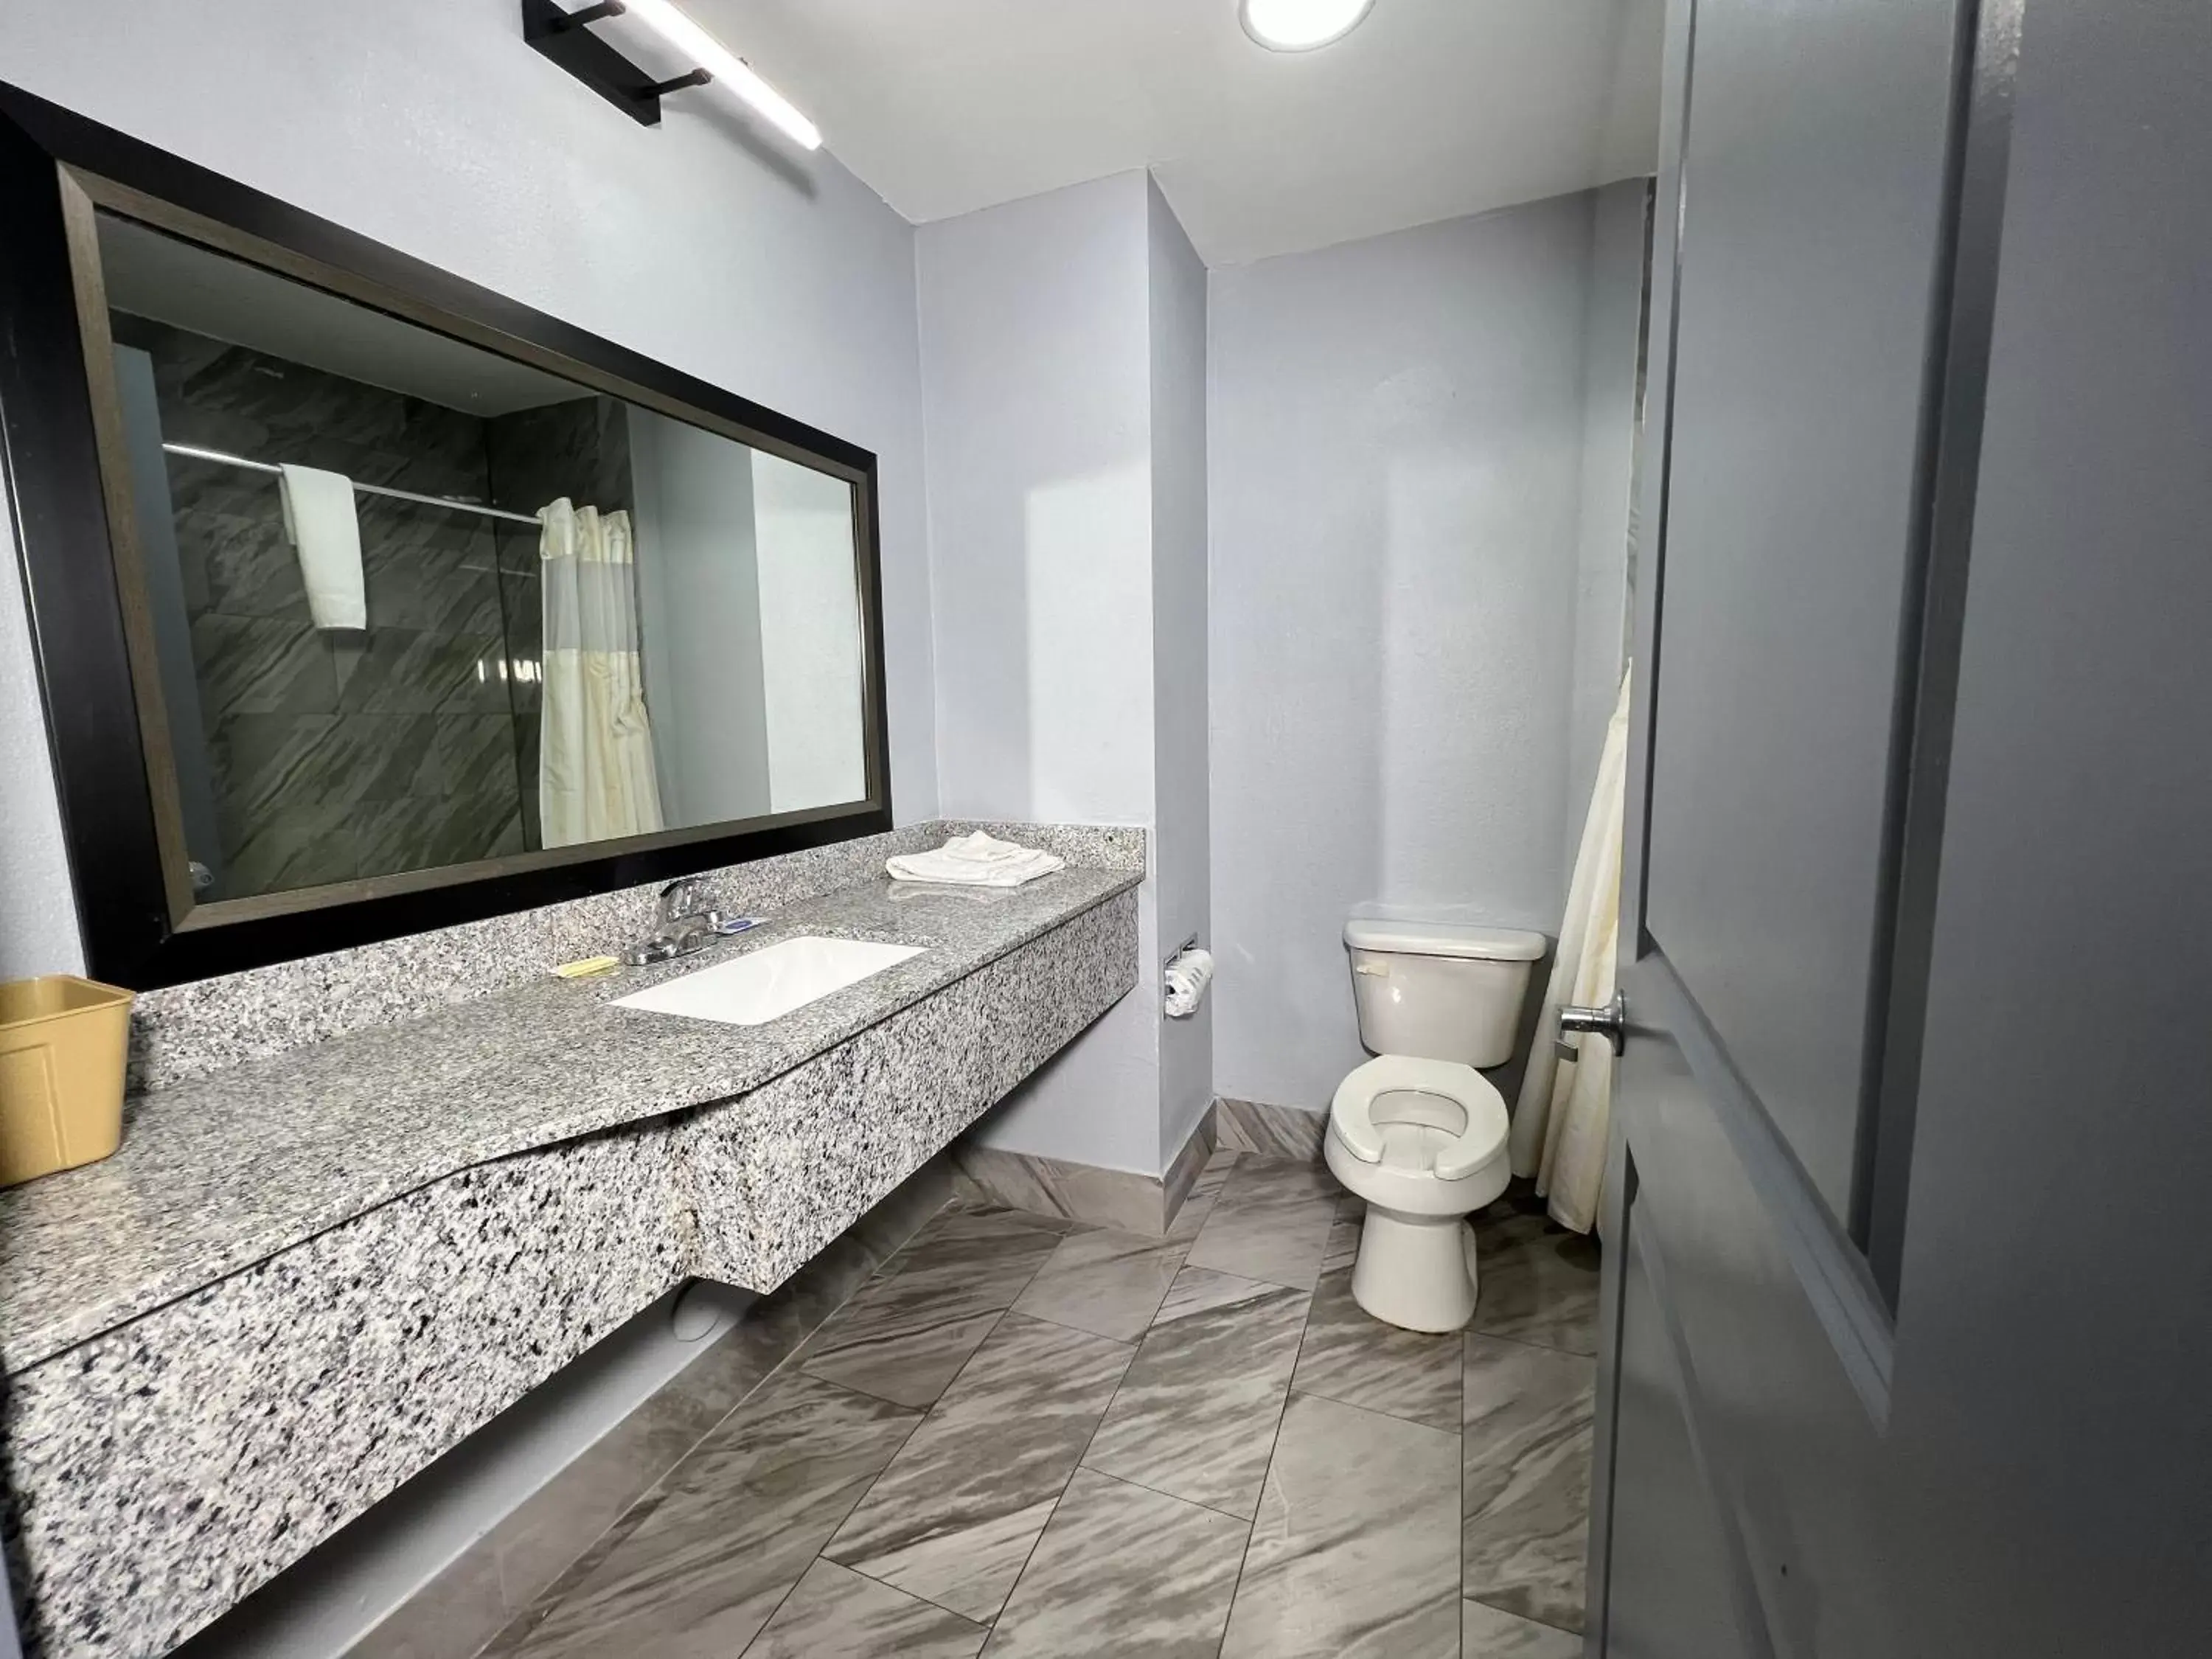 Bathroom in Jamestown inn & Suites